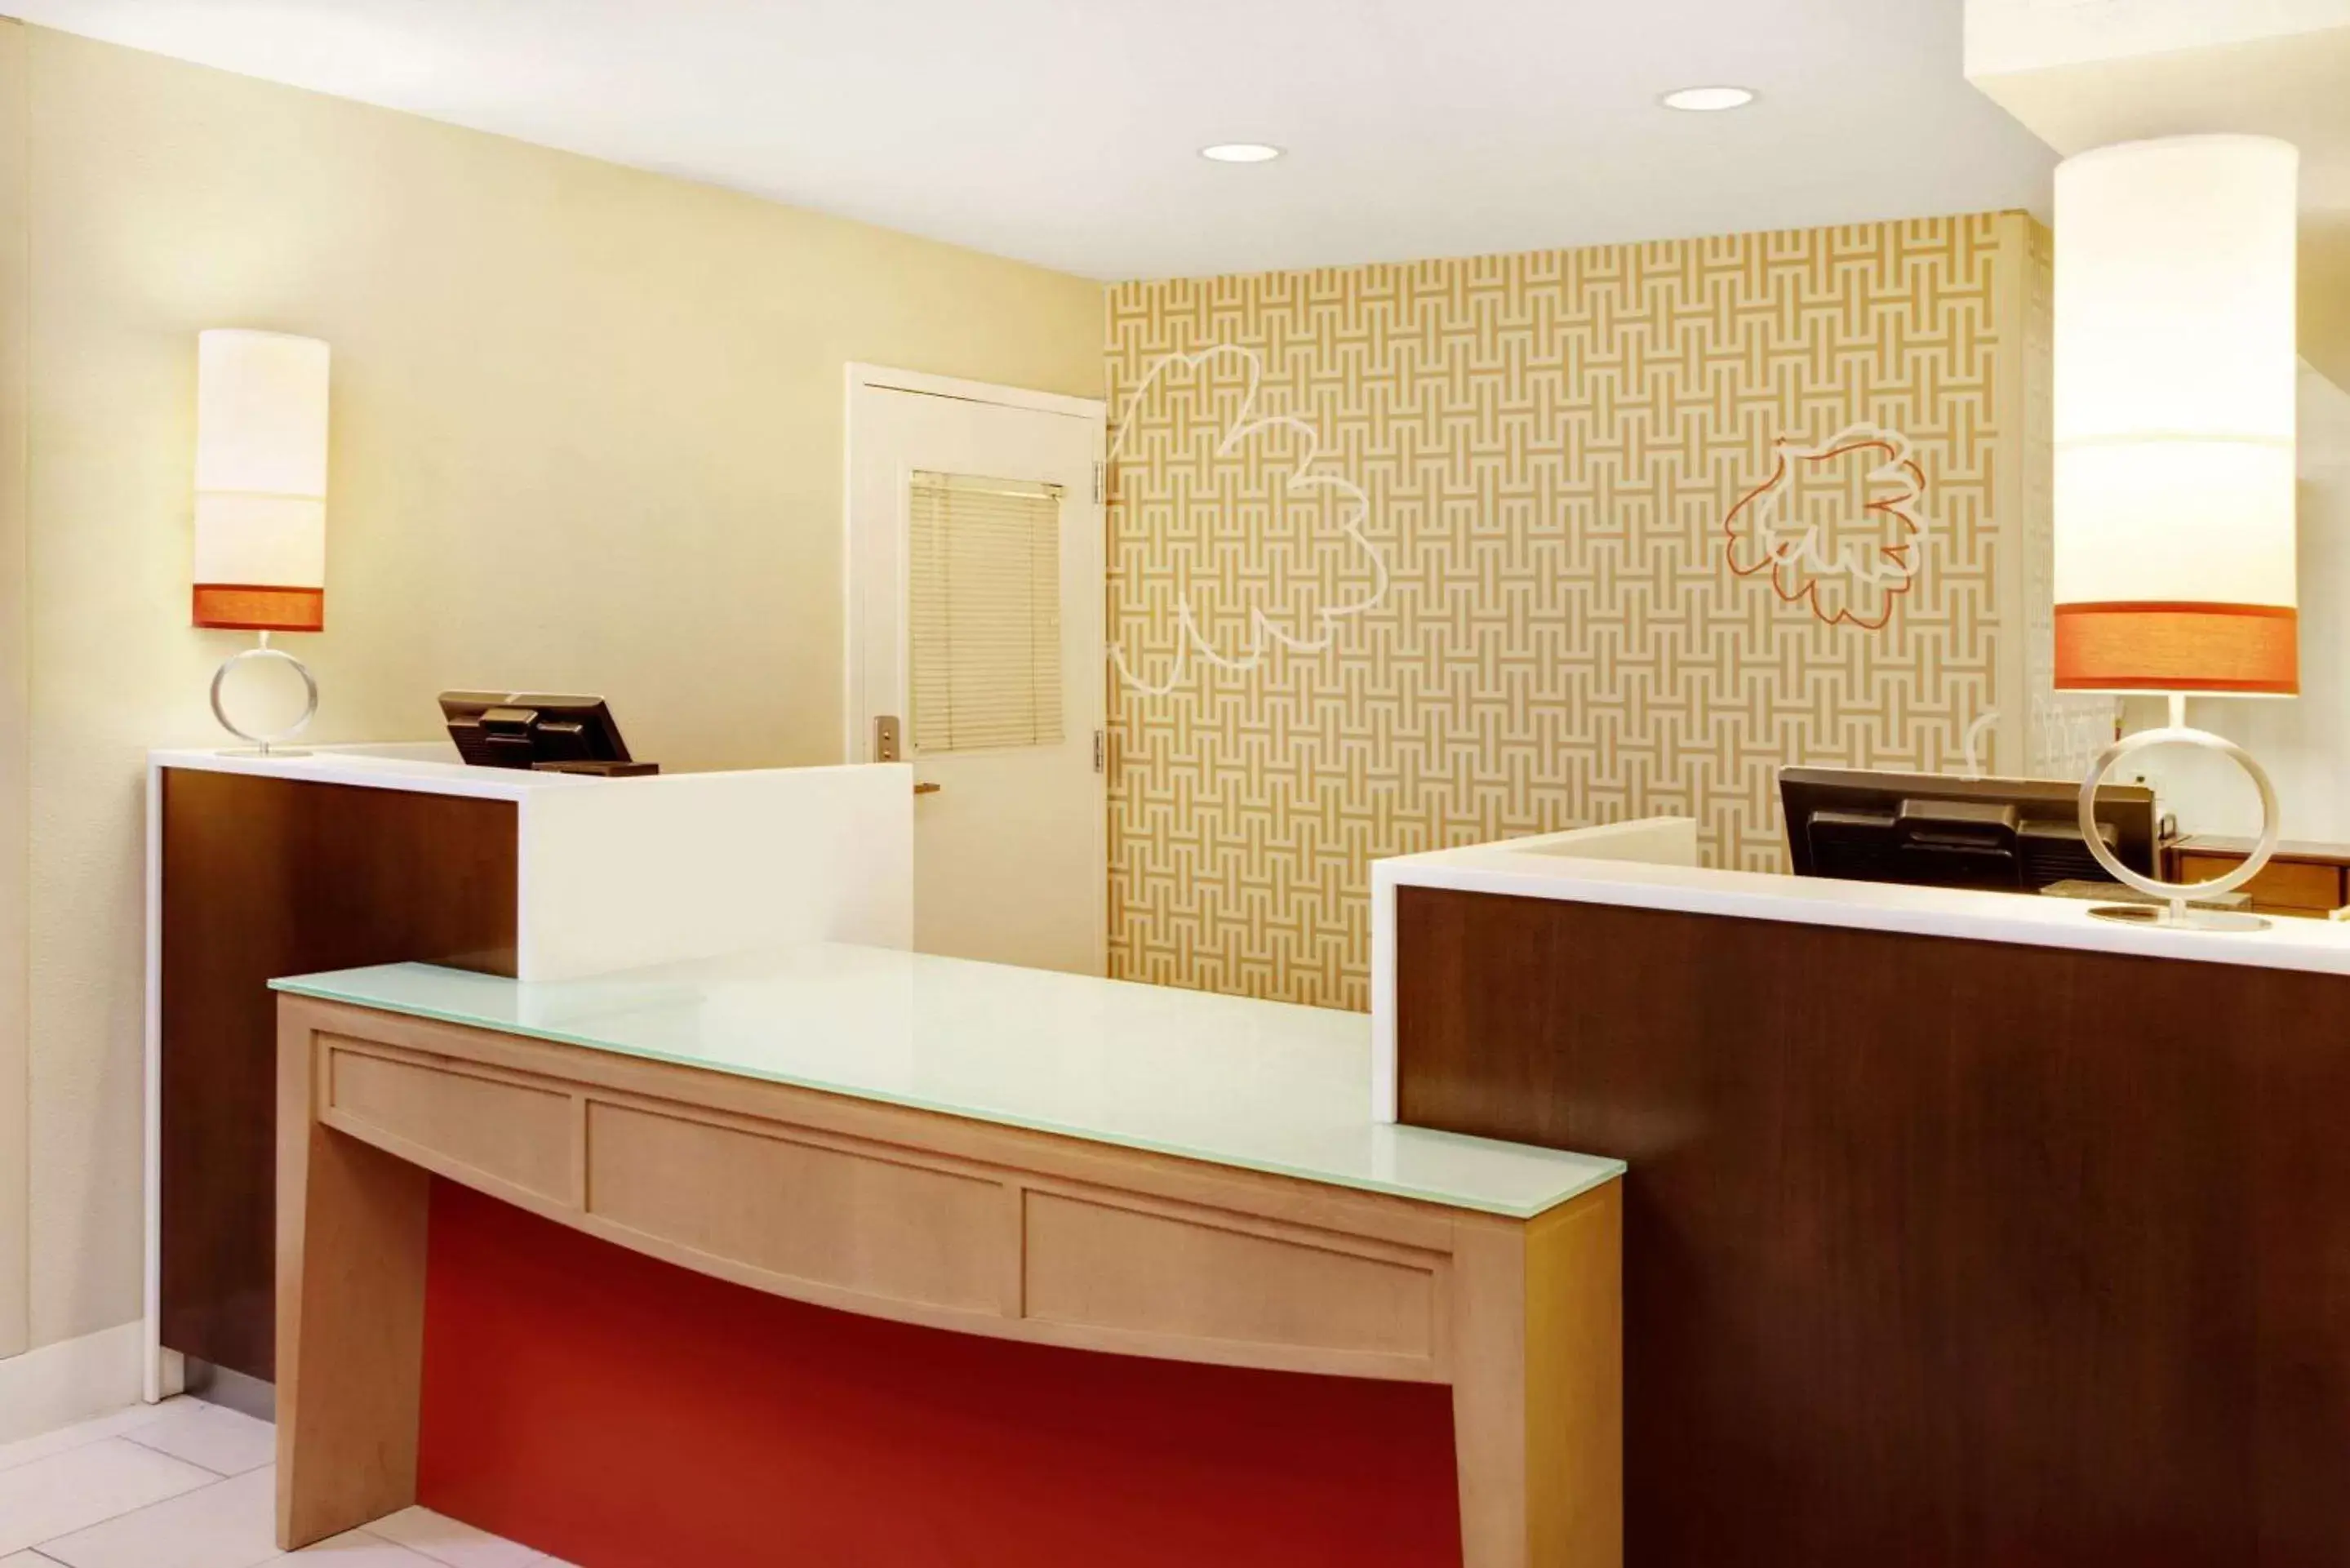 Lobby or reception, Kitchen/Kitchenette in MainStay Suites Chicago Schaumburg